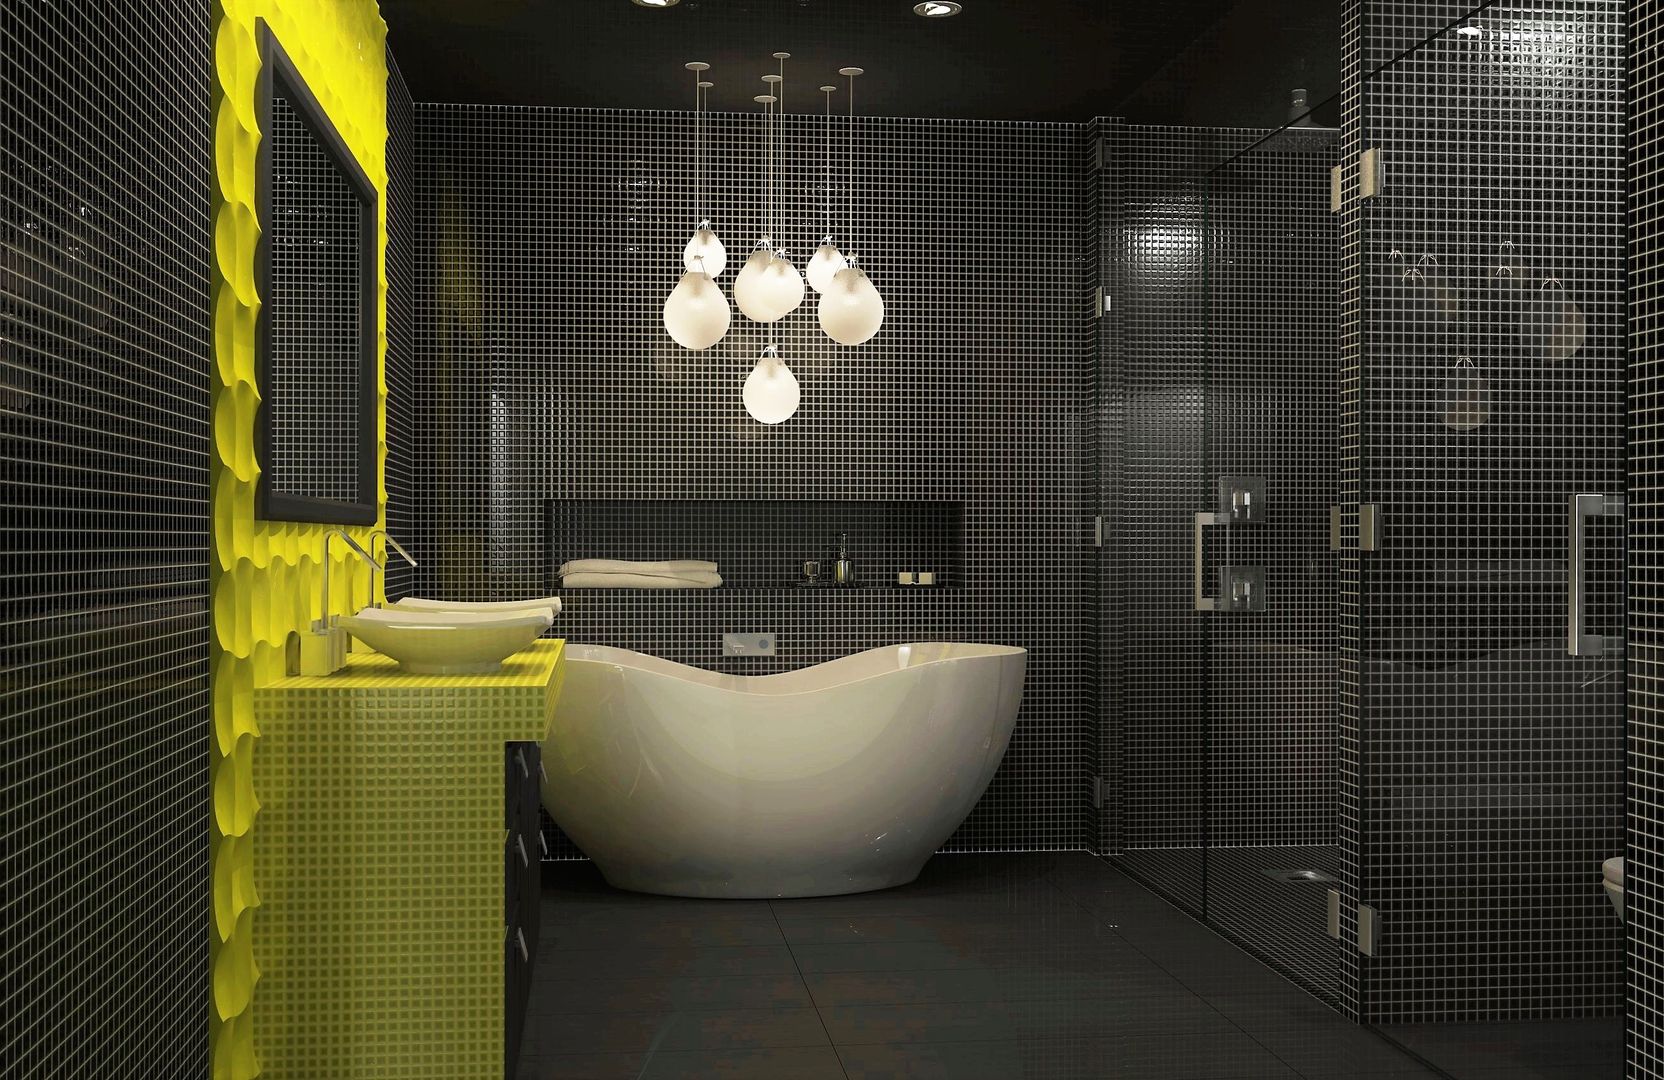 Bathroom interior design Lena Lobiv Interior Design Moderne badkamers interior,interiordesign,bathroom,mosaic tile,bright colours,homedecor